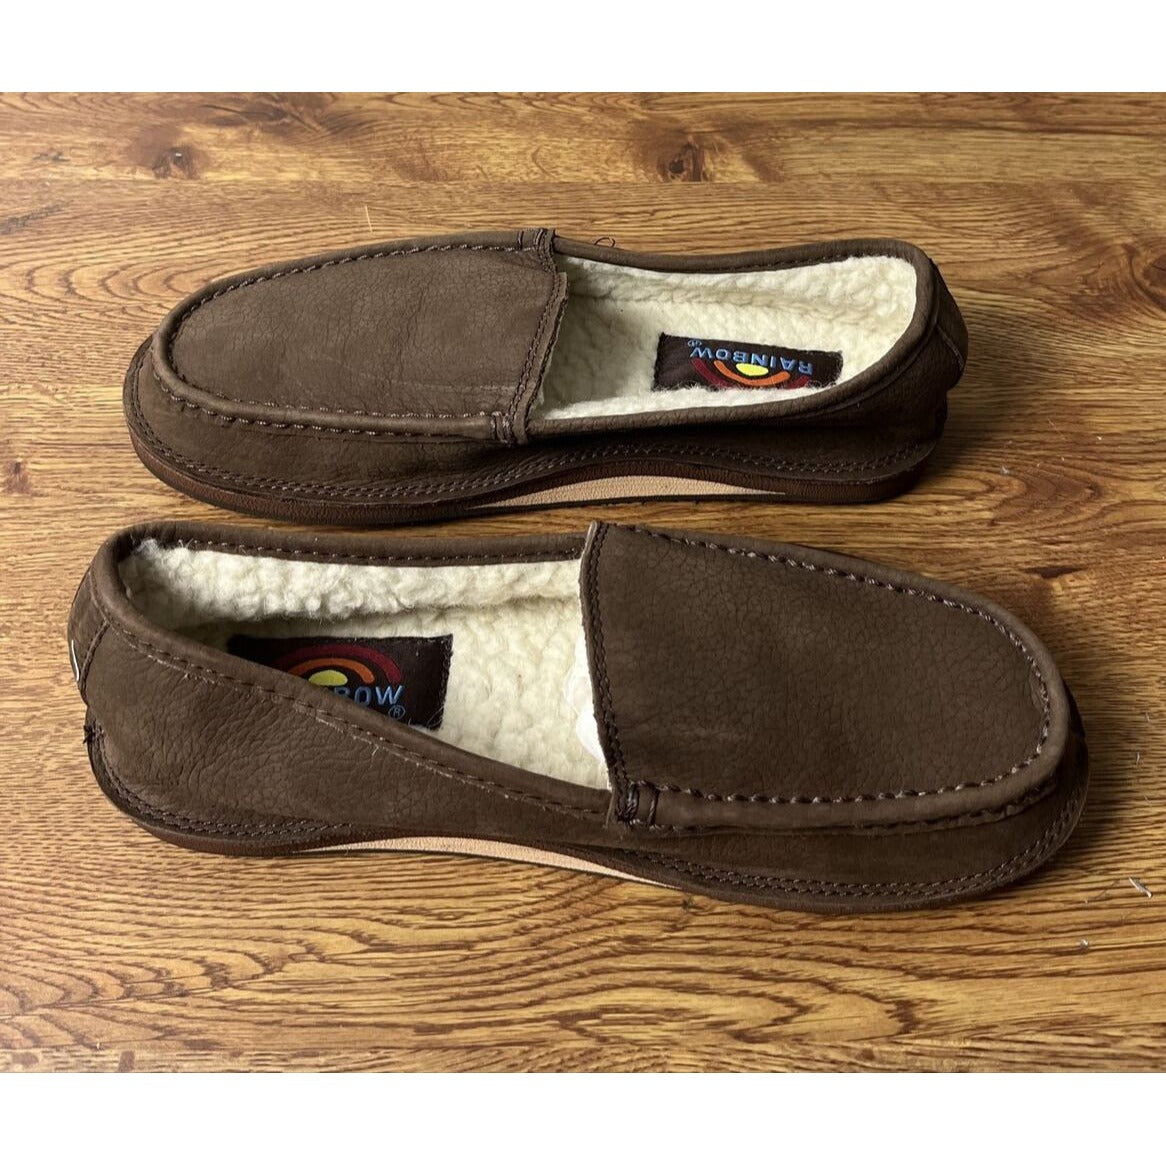 Rainbow Sandals Comfort Classic Fleece Loafers - Men’s 7 - Expresso